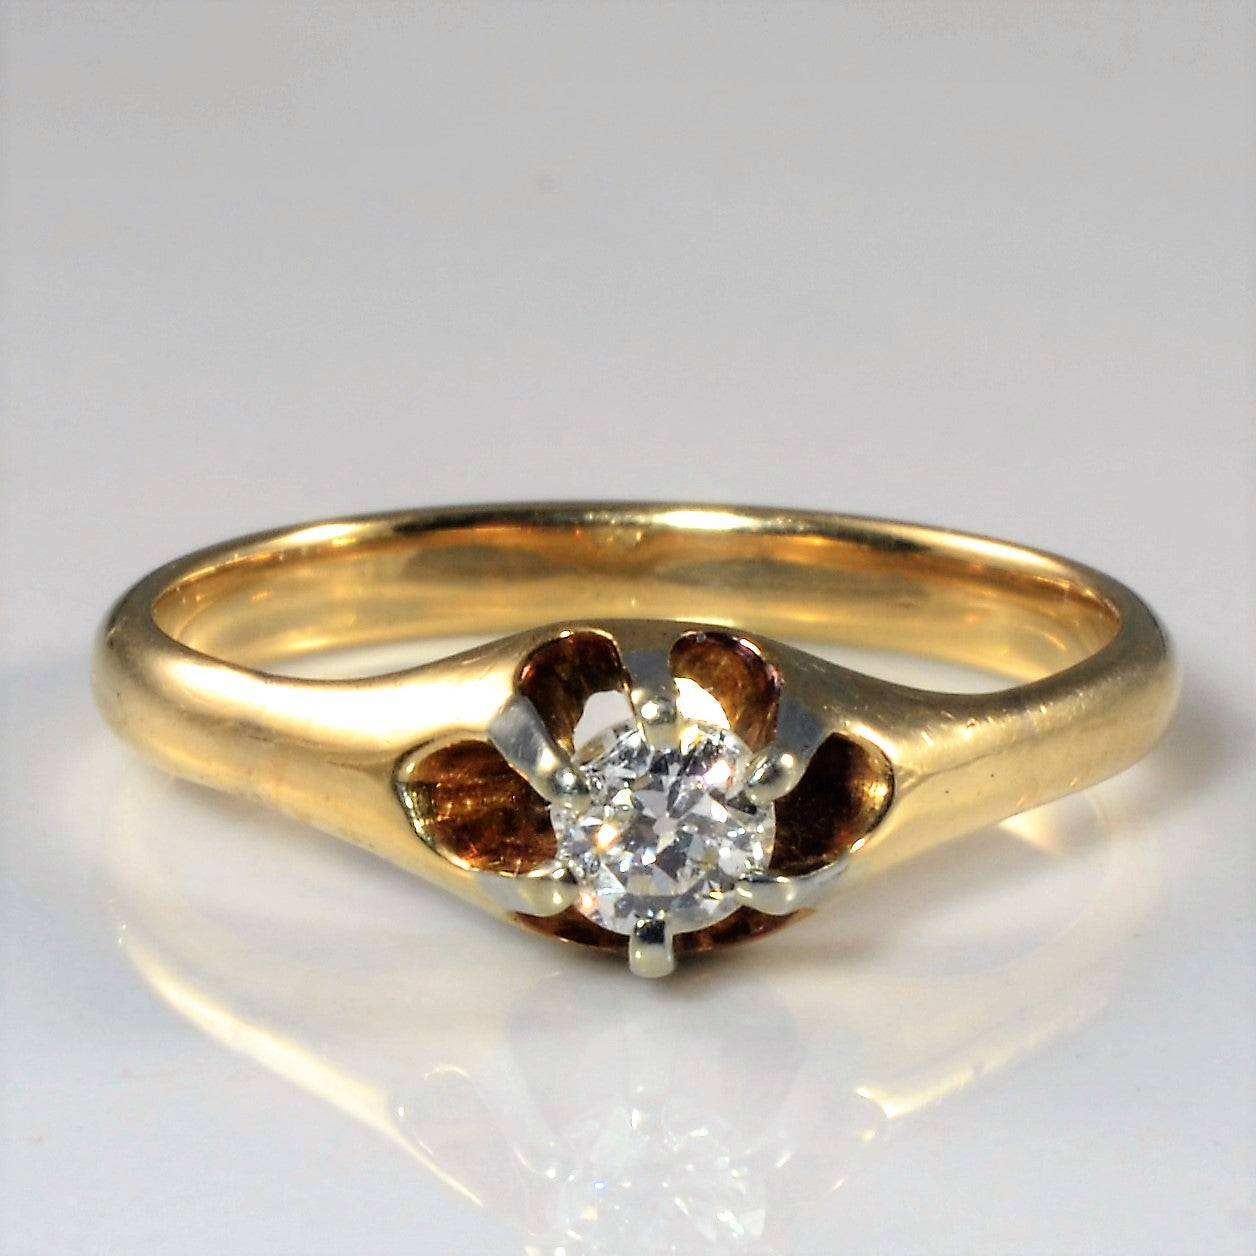 Edwardian Era Solitaire Diamond Ring | 0.22ct | SZ 7 |